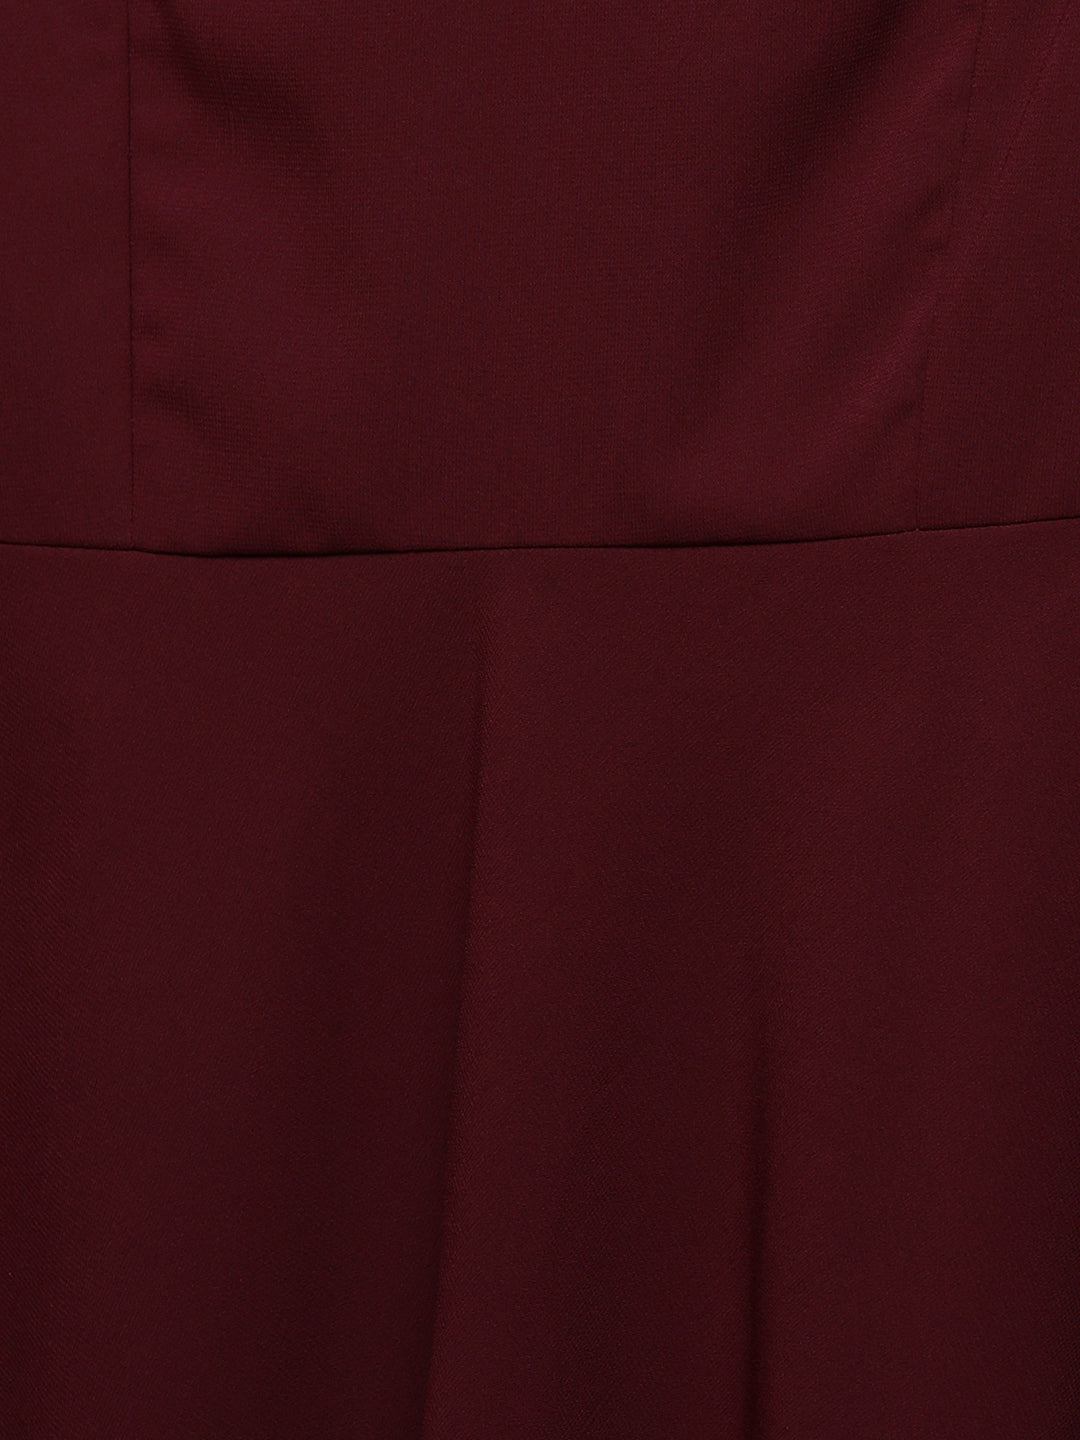 Women's Wine Red V-Neck Sleeveless Solid High-Low Midi Skater Dress